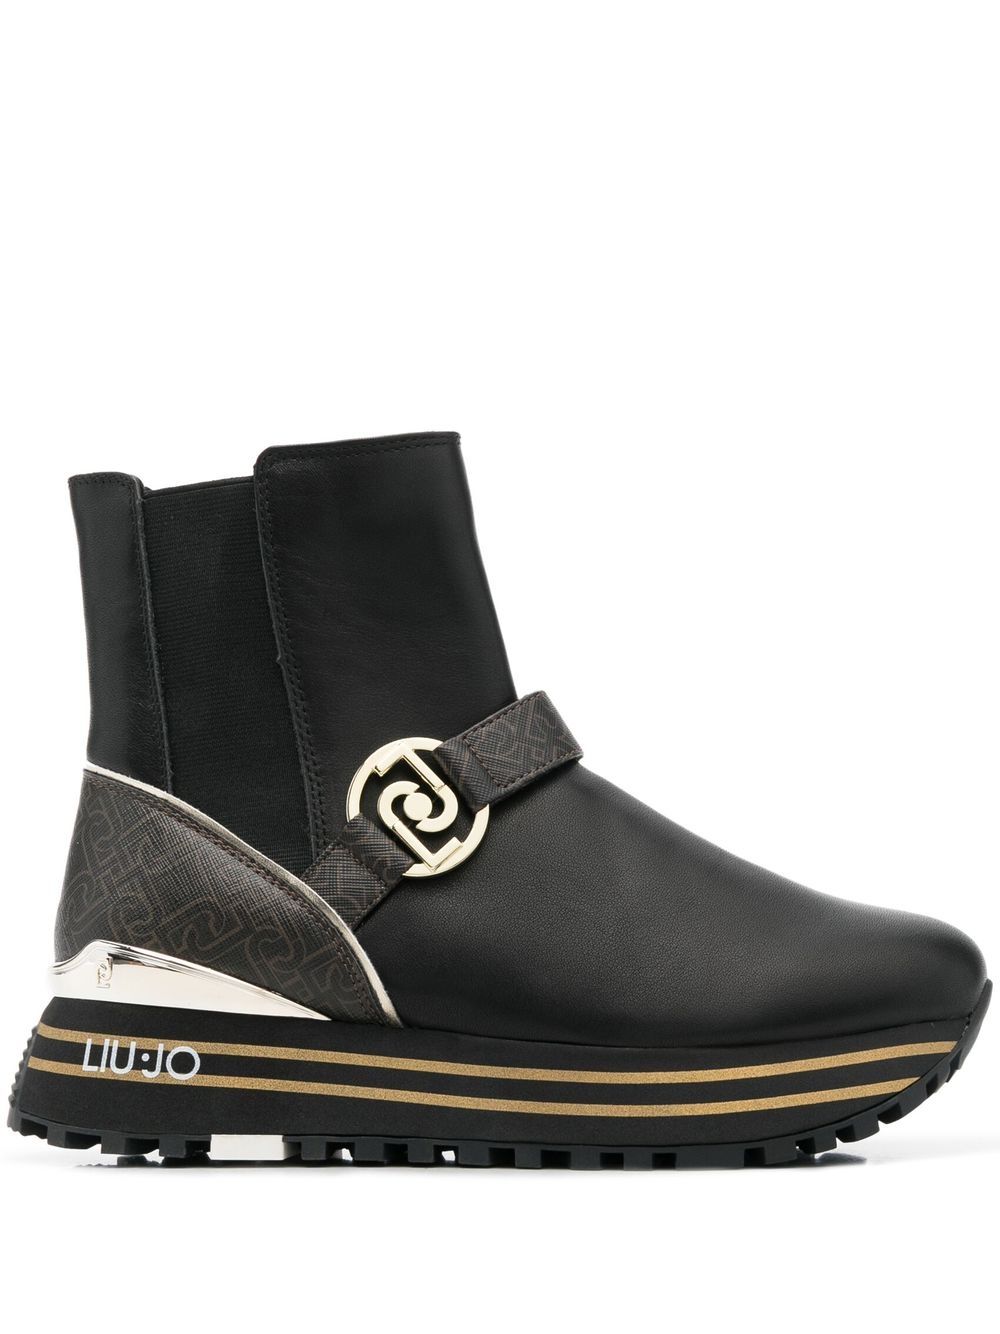 LIU JO Maxi Wonder leather ankle boots - Black von LIU JO